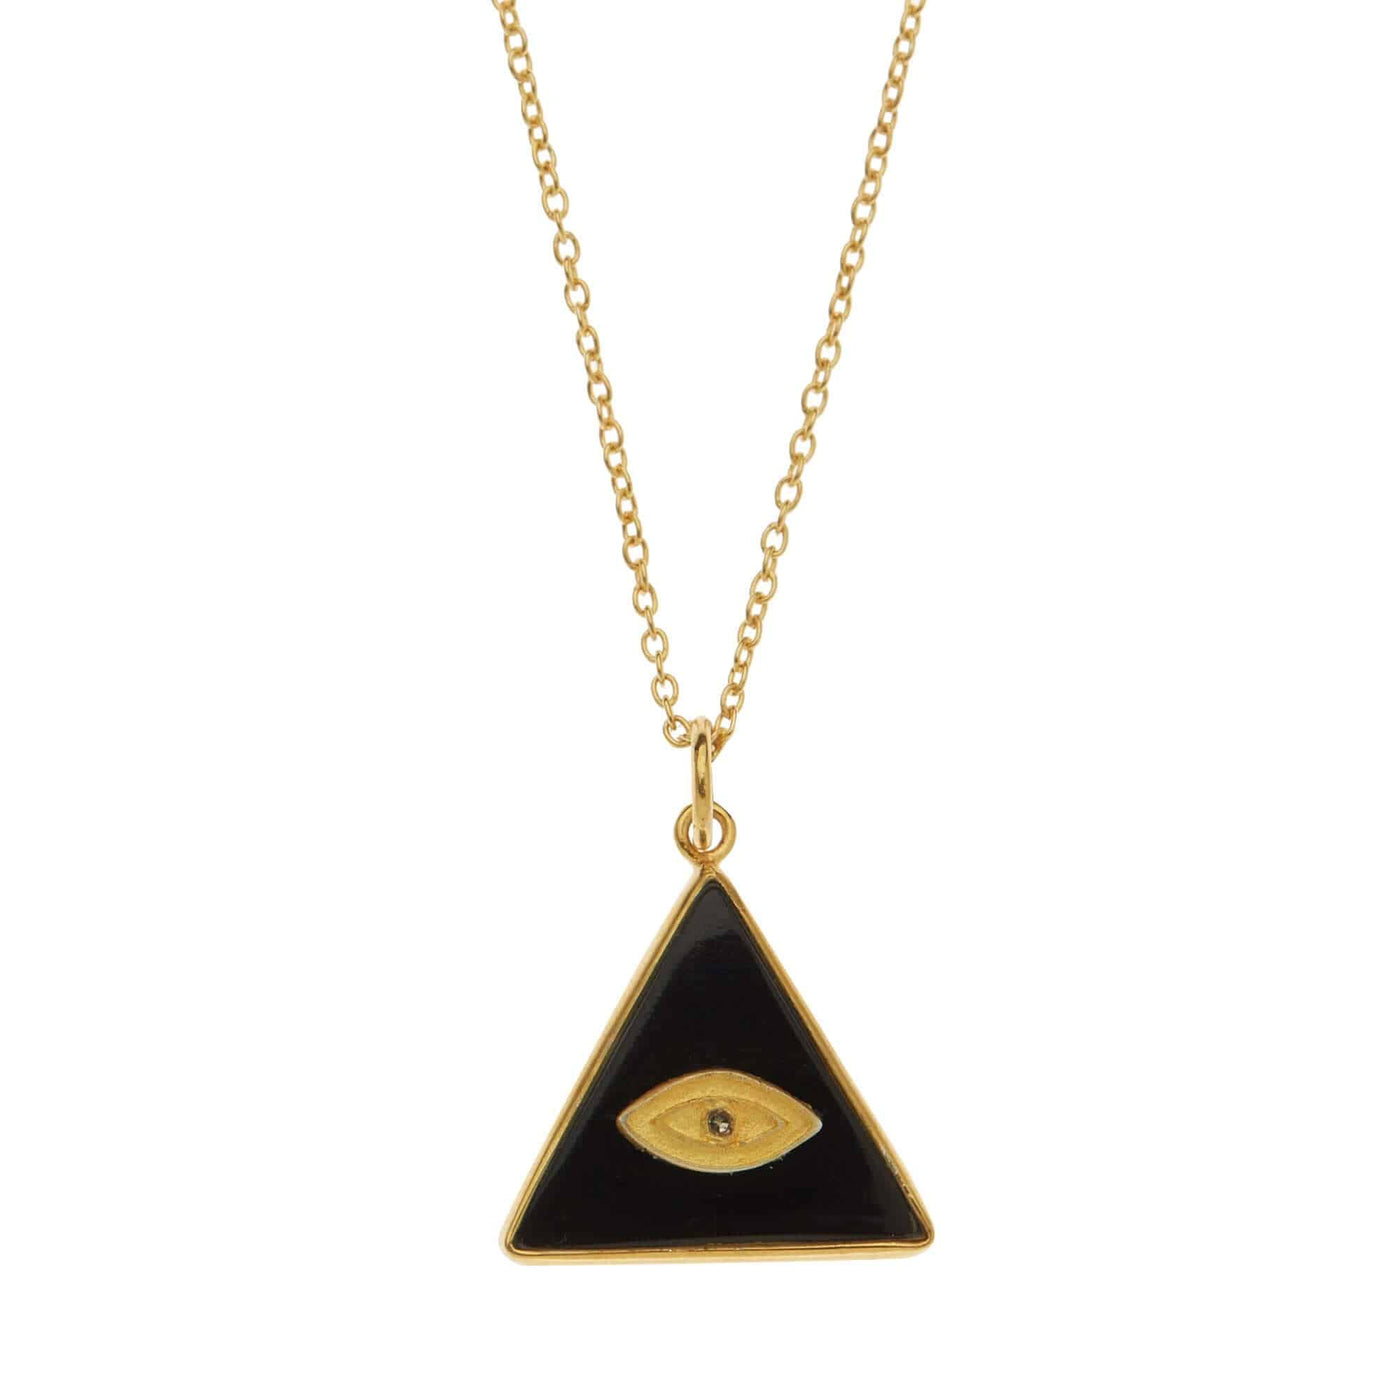 All Seeing Triangle Eye Necklace with Black Onyx - Eye M by Ileana Makri